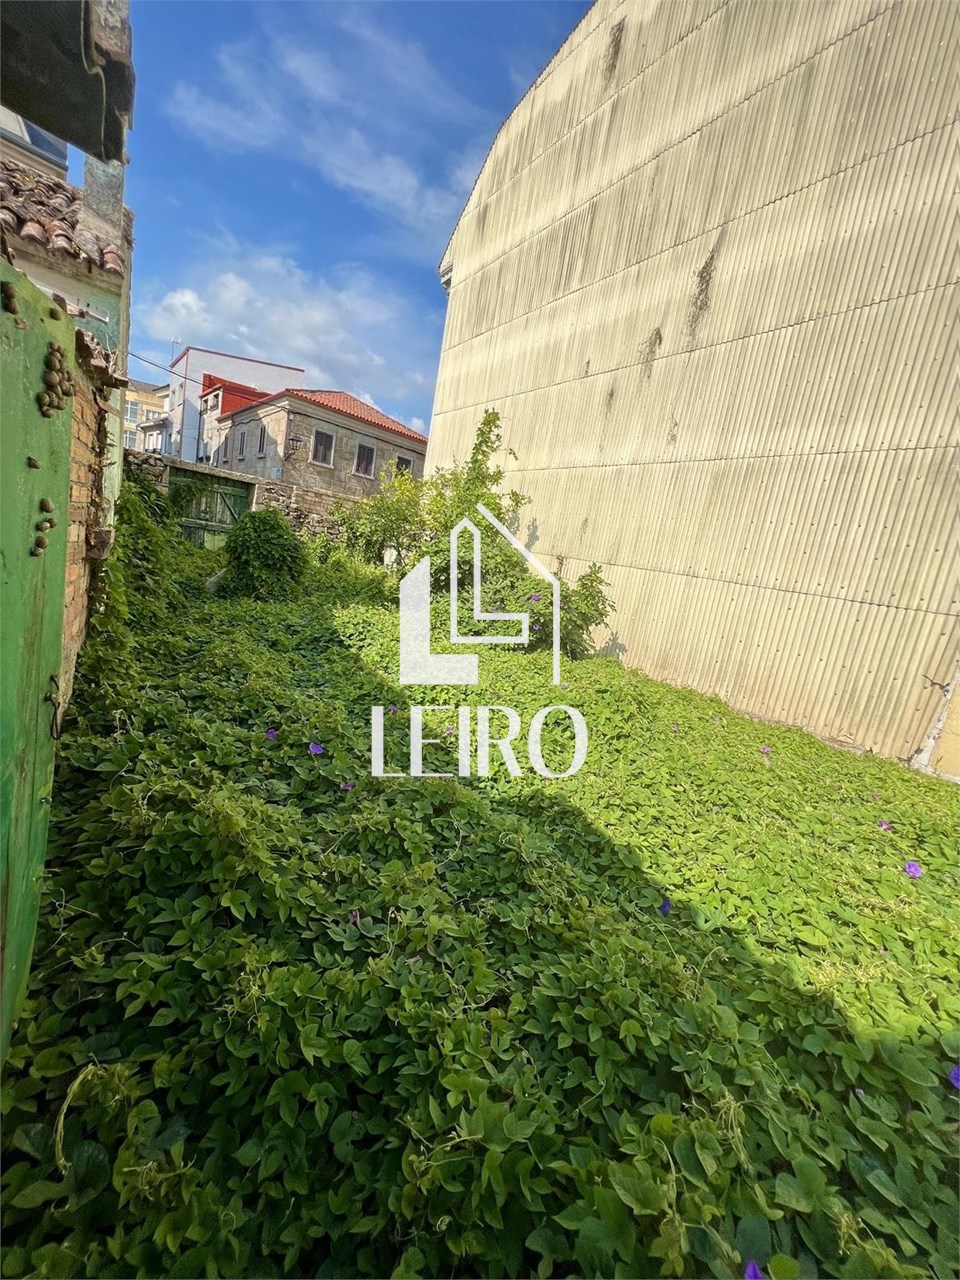 Foto 9 Casa a Rehabilitar con Terreno Anexo Urbanizable en el Centro de Vilanova